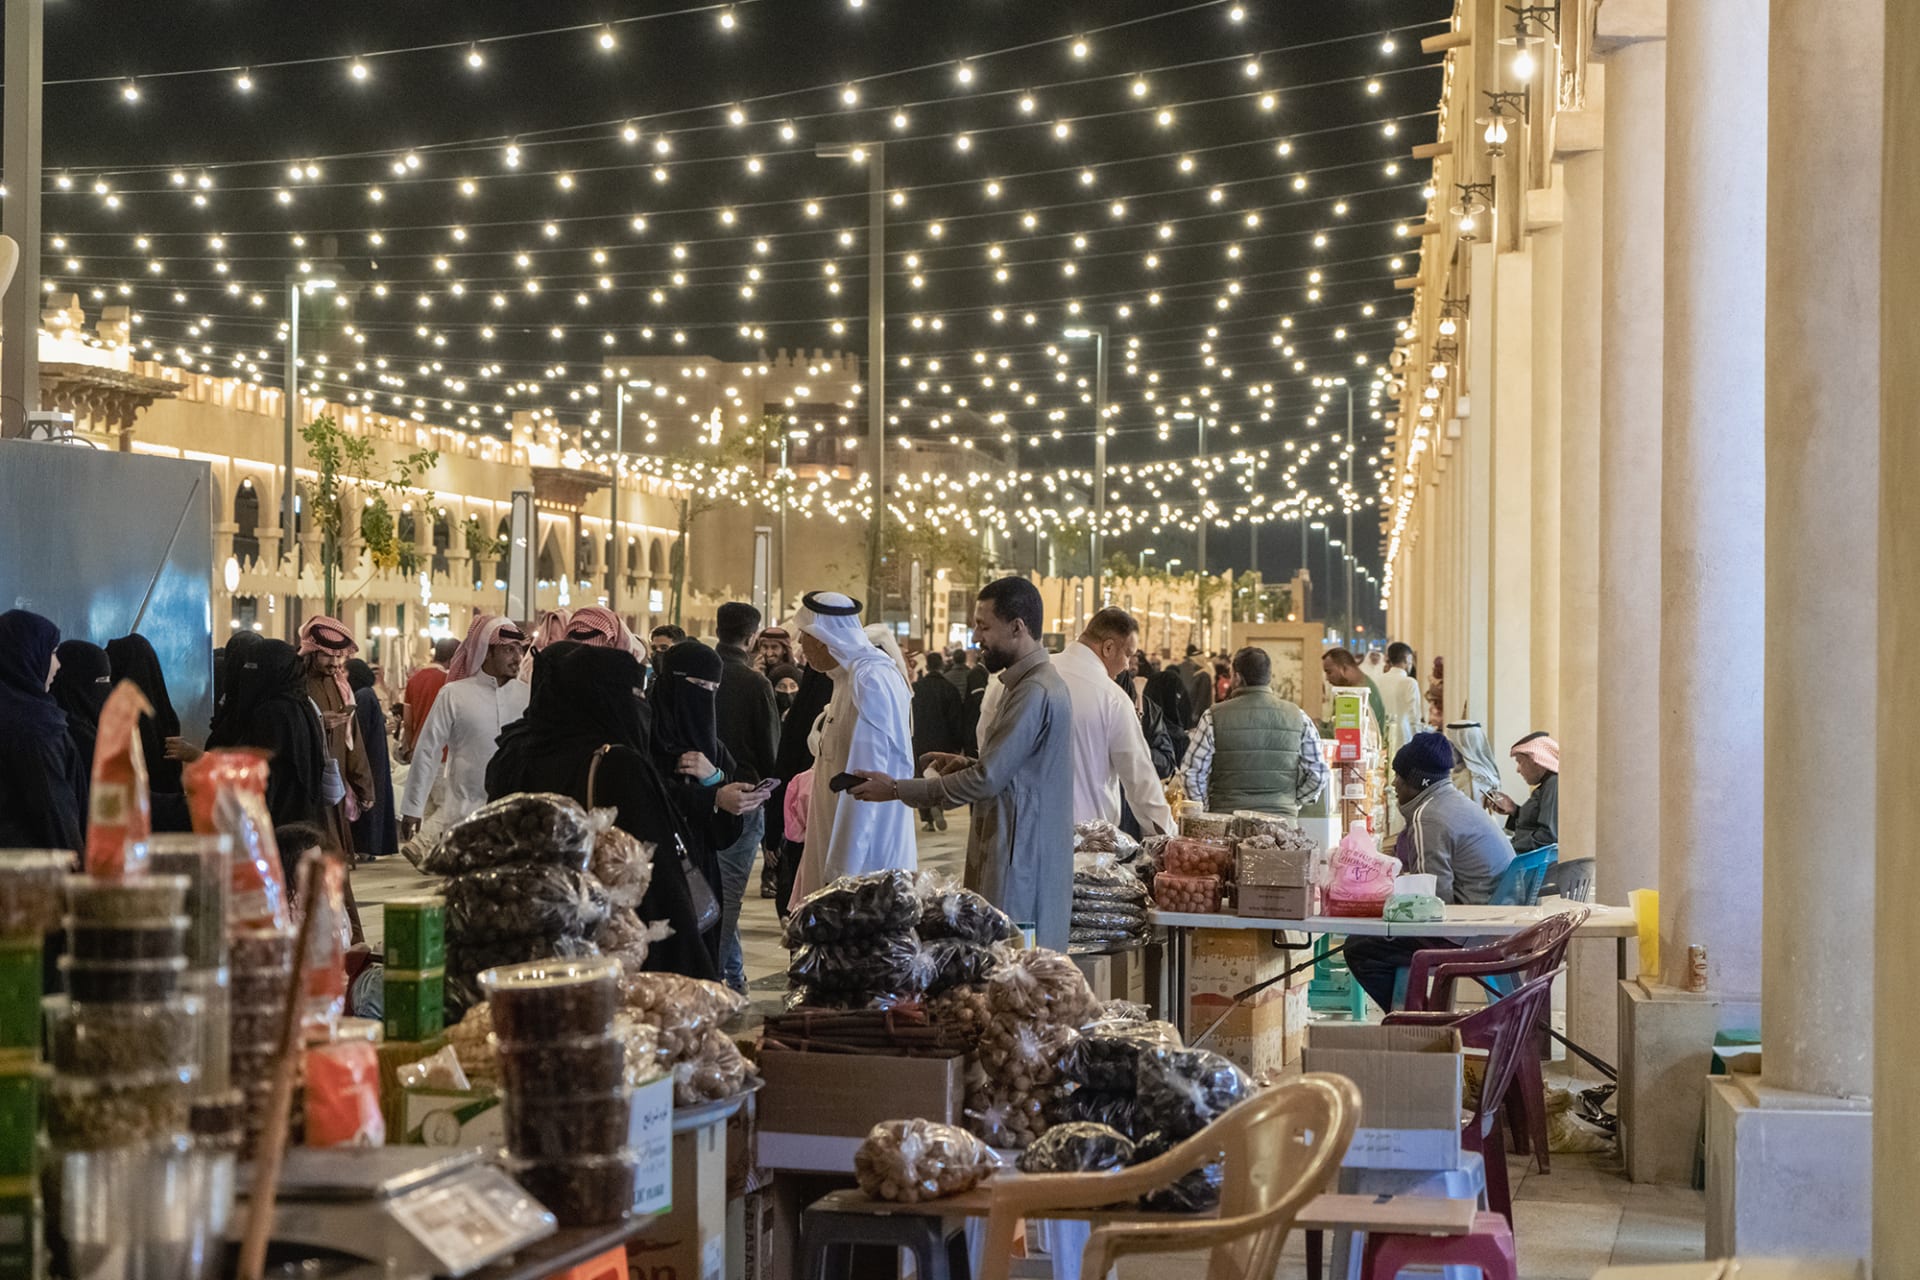 بالسعودية.. مصور يوثق أجواء رمضان بأحد أقدم أسواق الجزيرة العربية